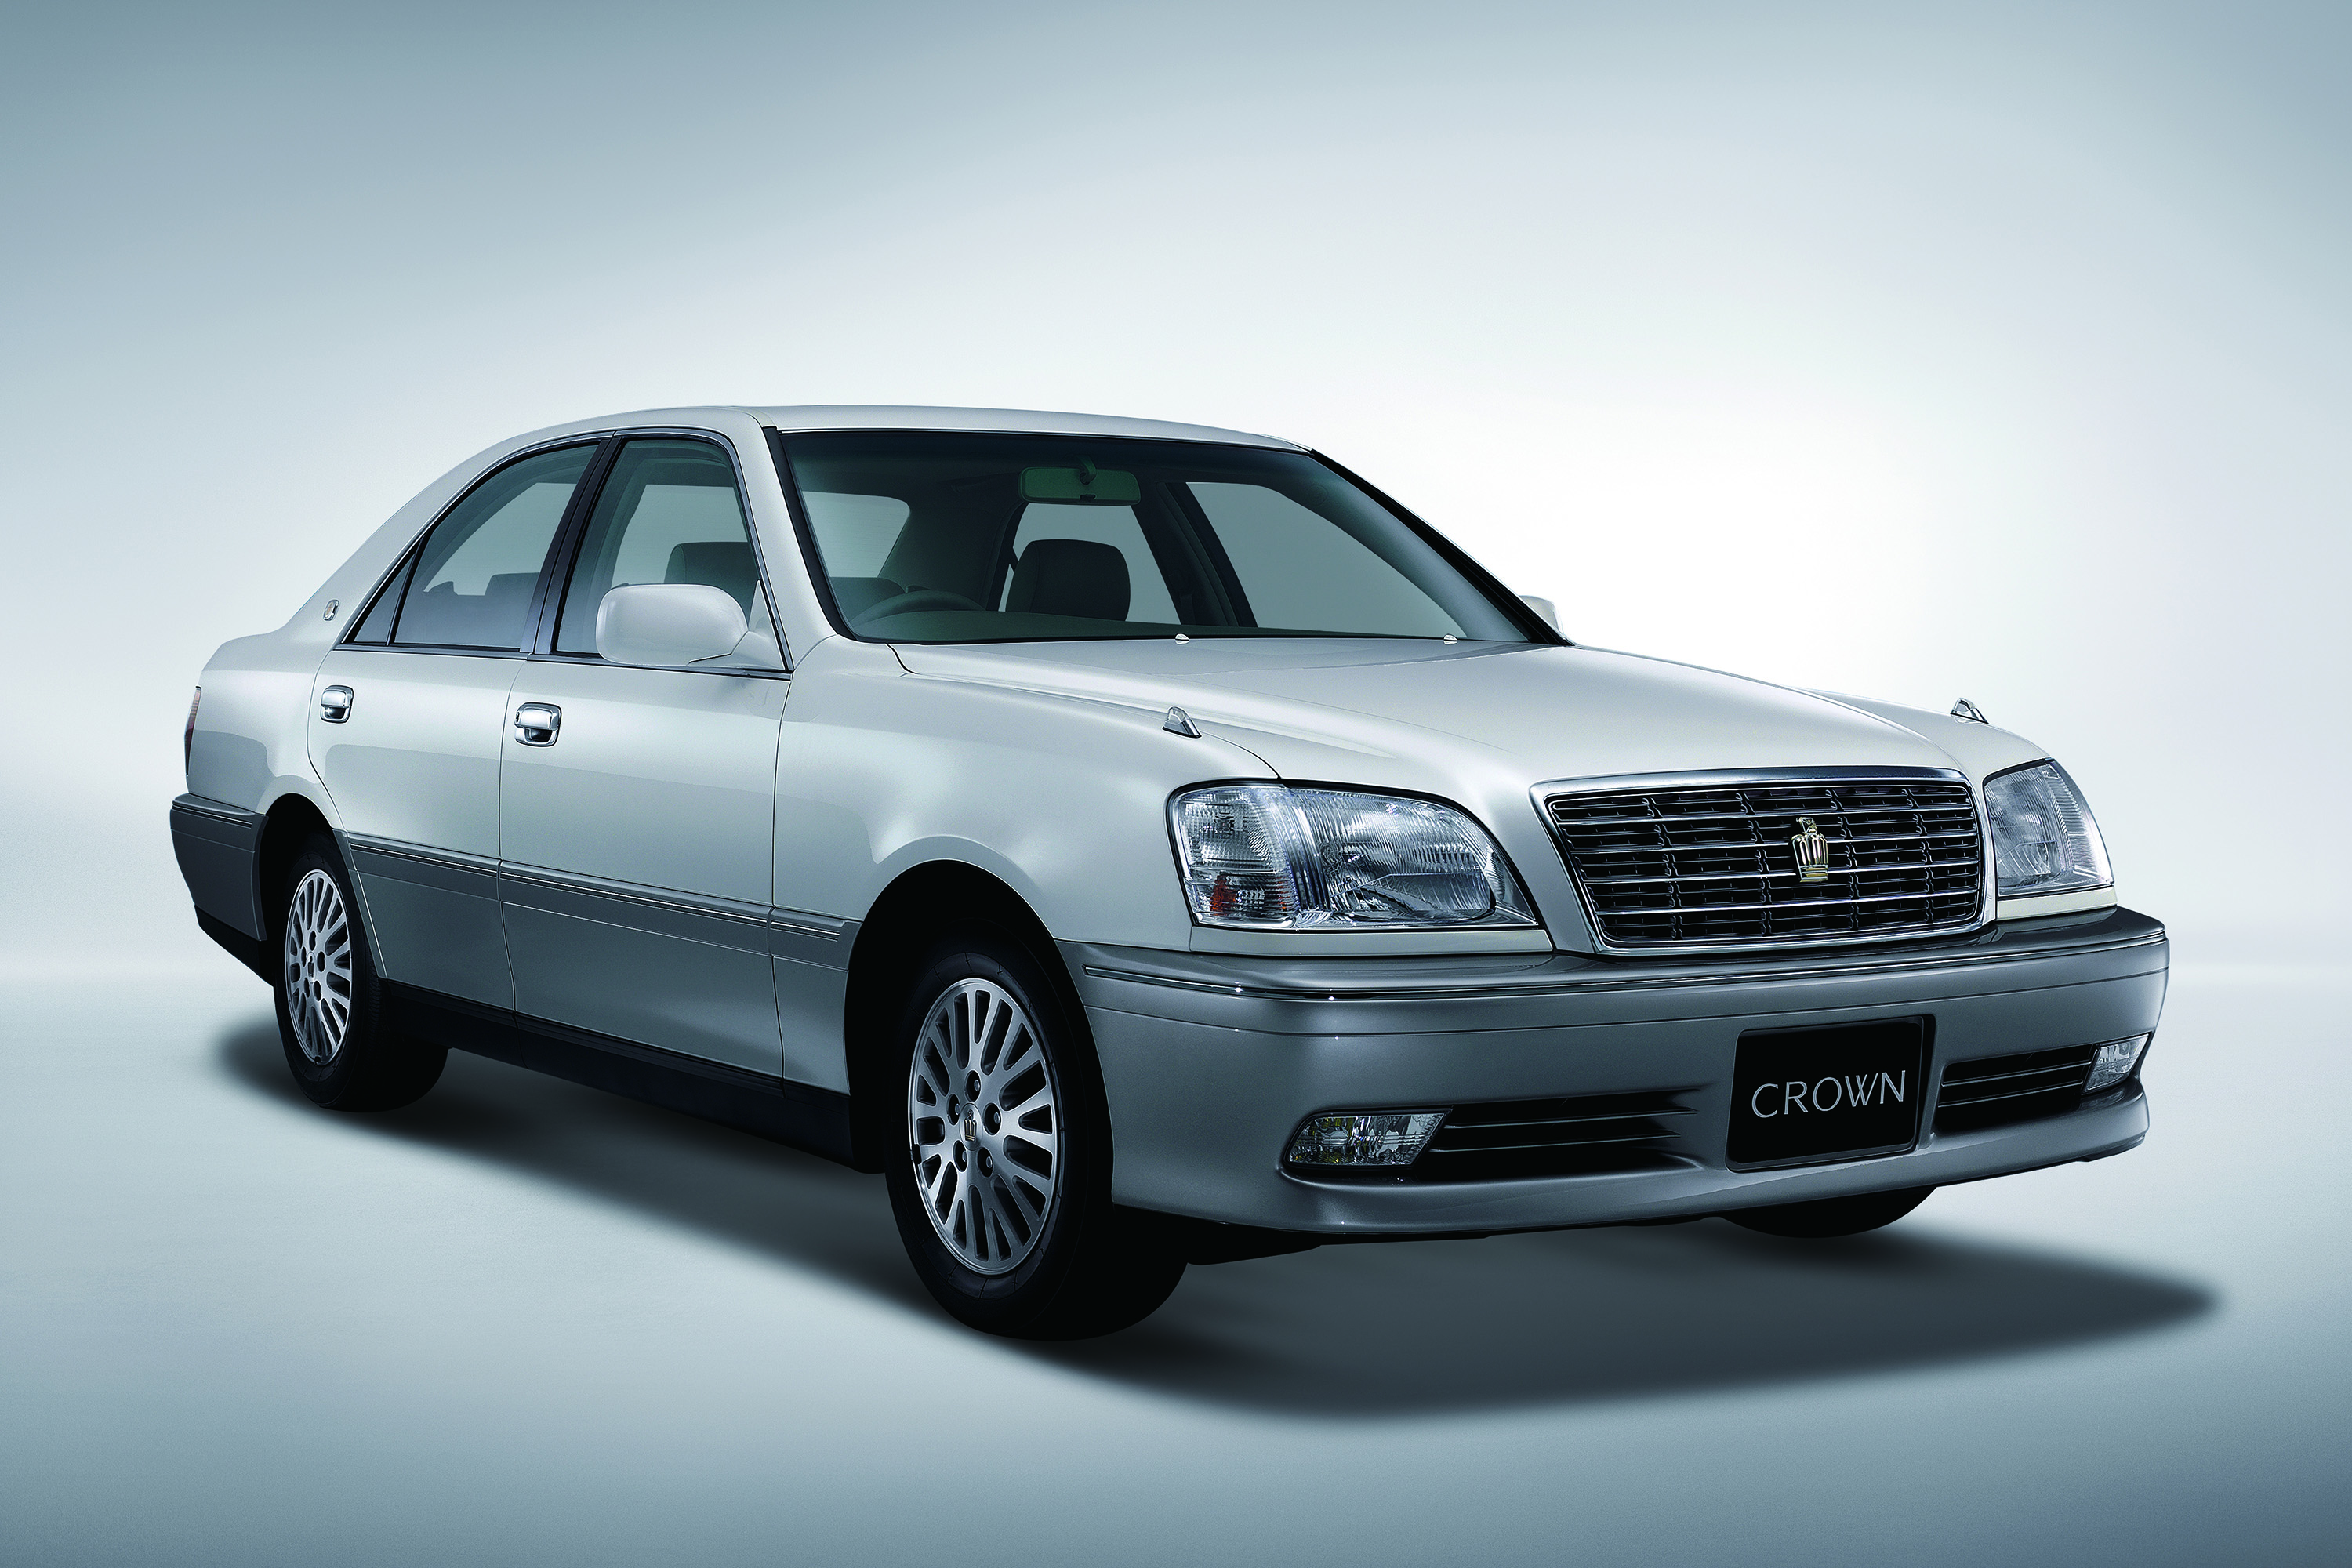 第二代皇冠"crown61eight"成为日本皇室成员座驾"丰田世纪"的原型车